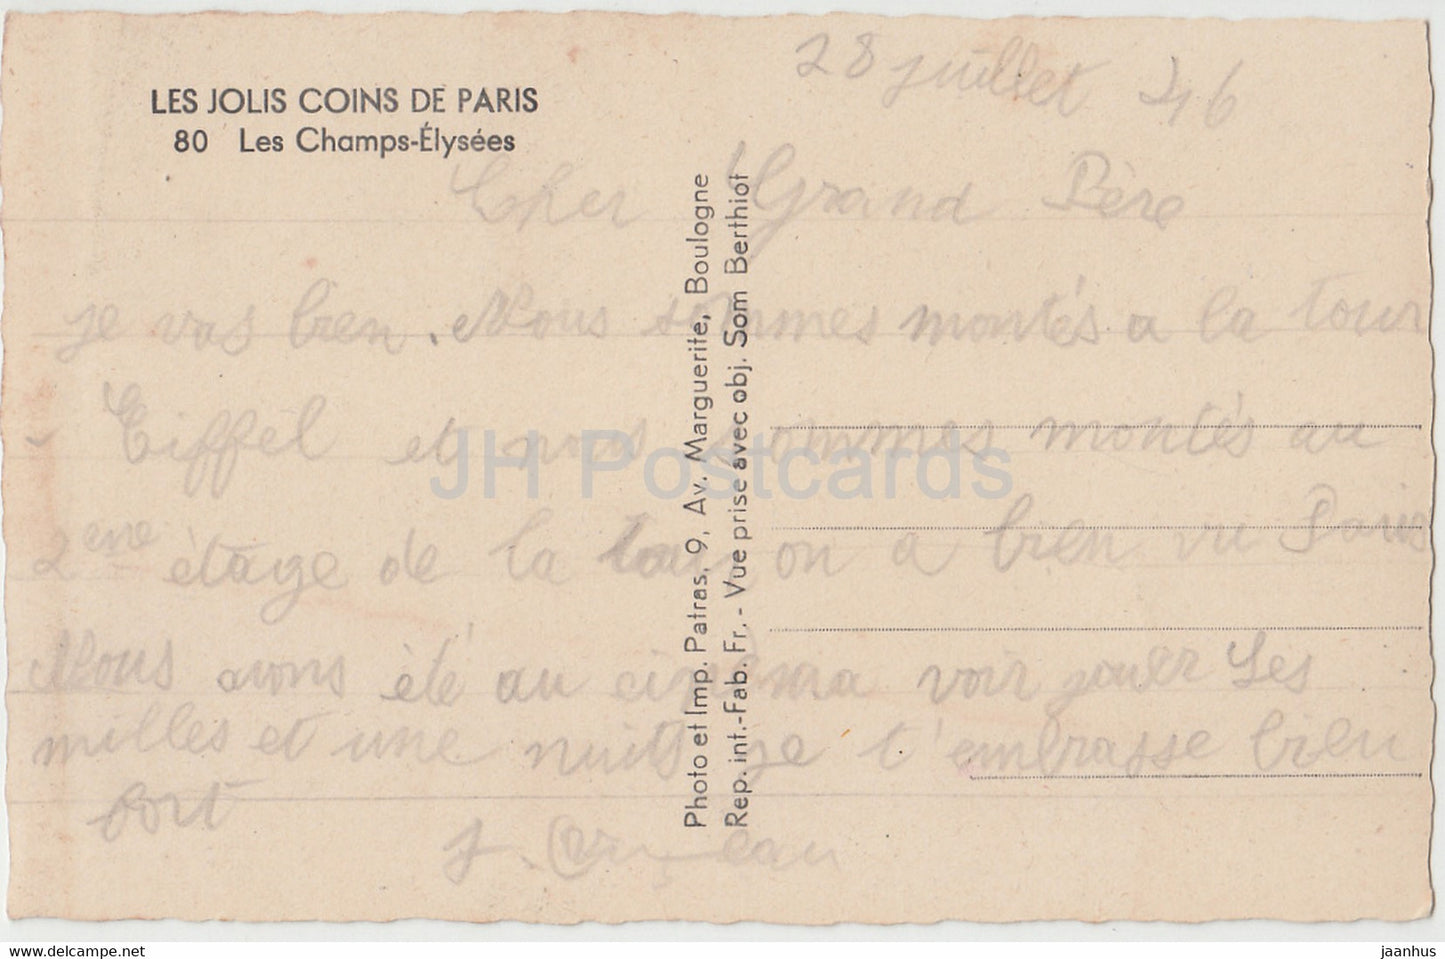 Paris - Les Champs Elysees - Les Jolis Coins de Paris - car - 80 - old postcard - 1946 - France - used